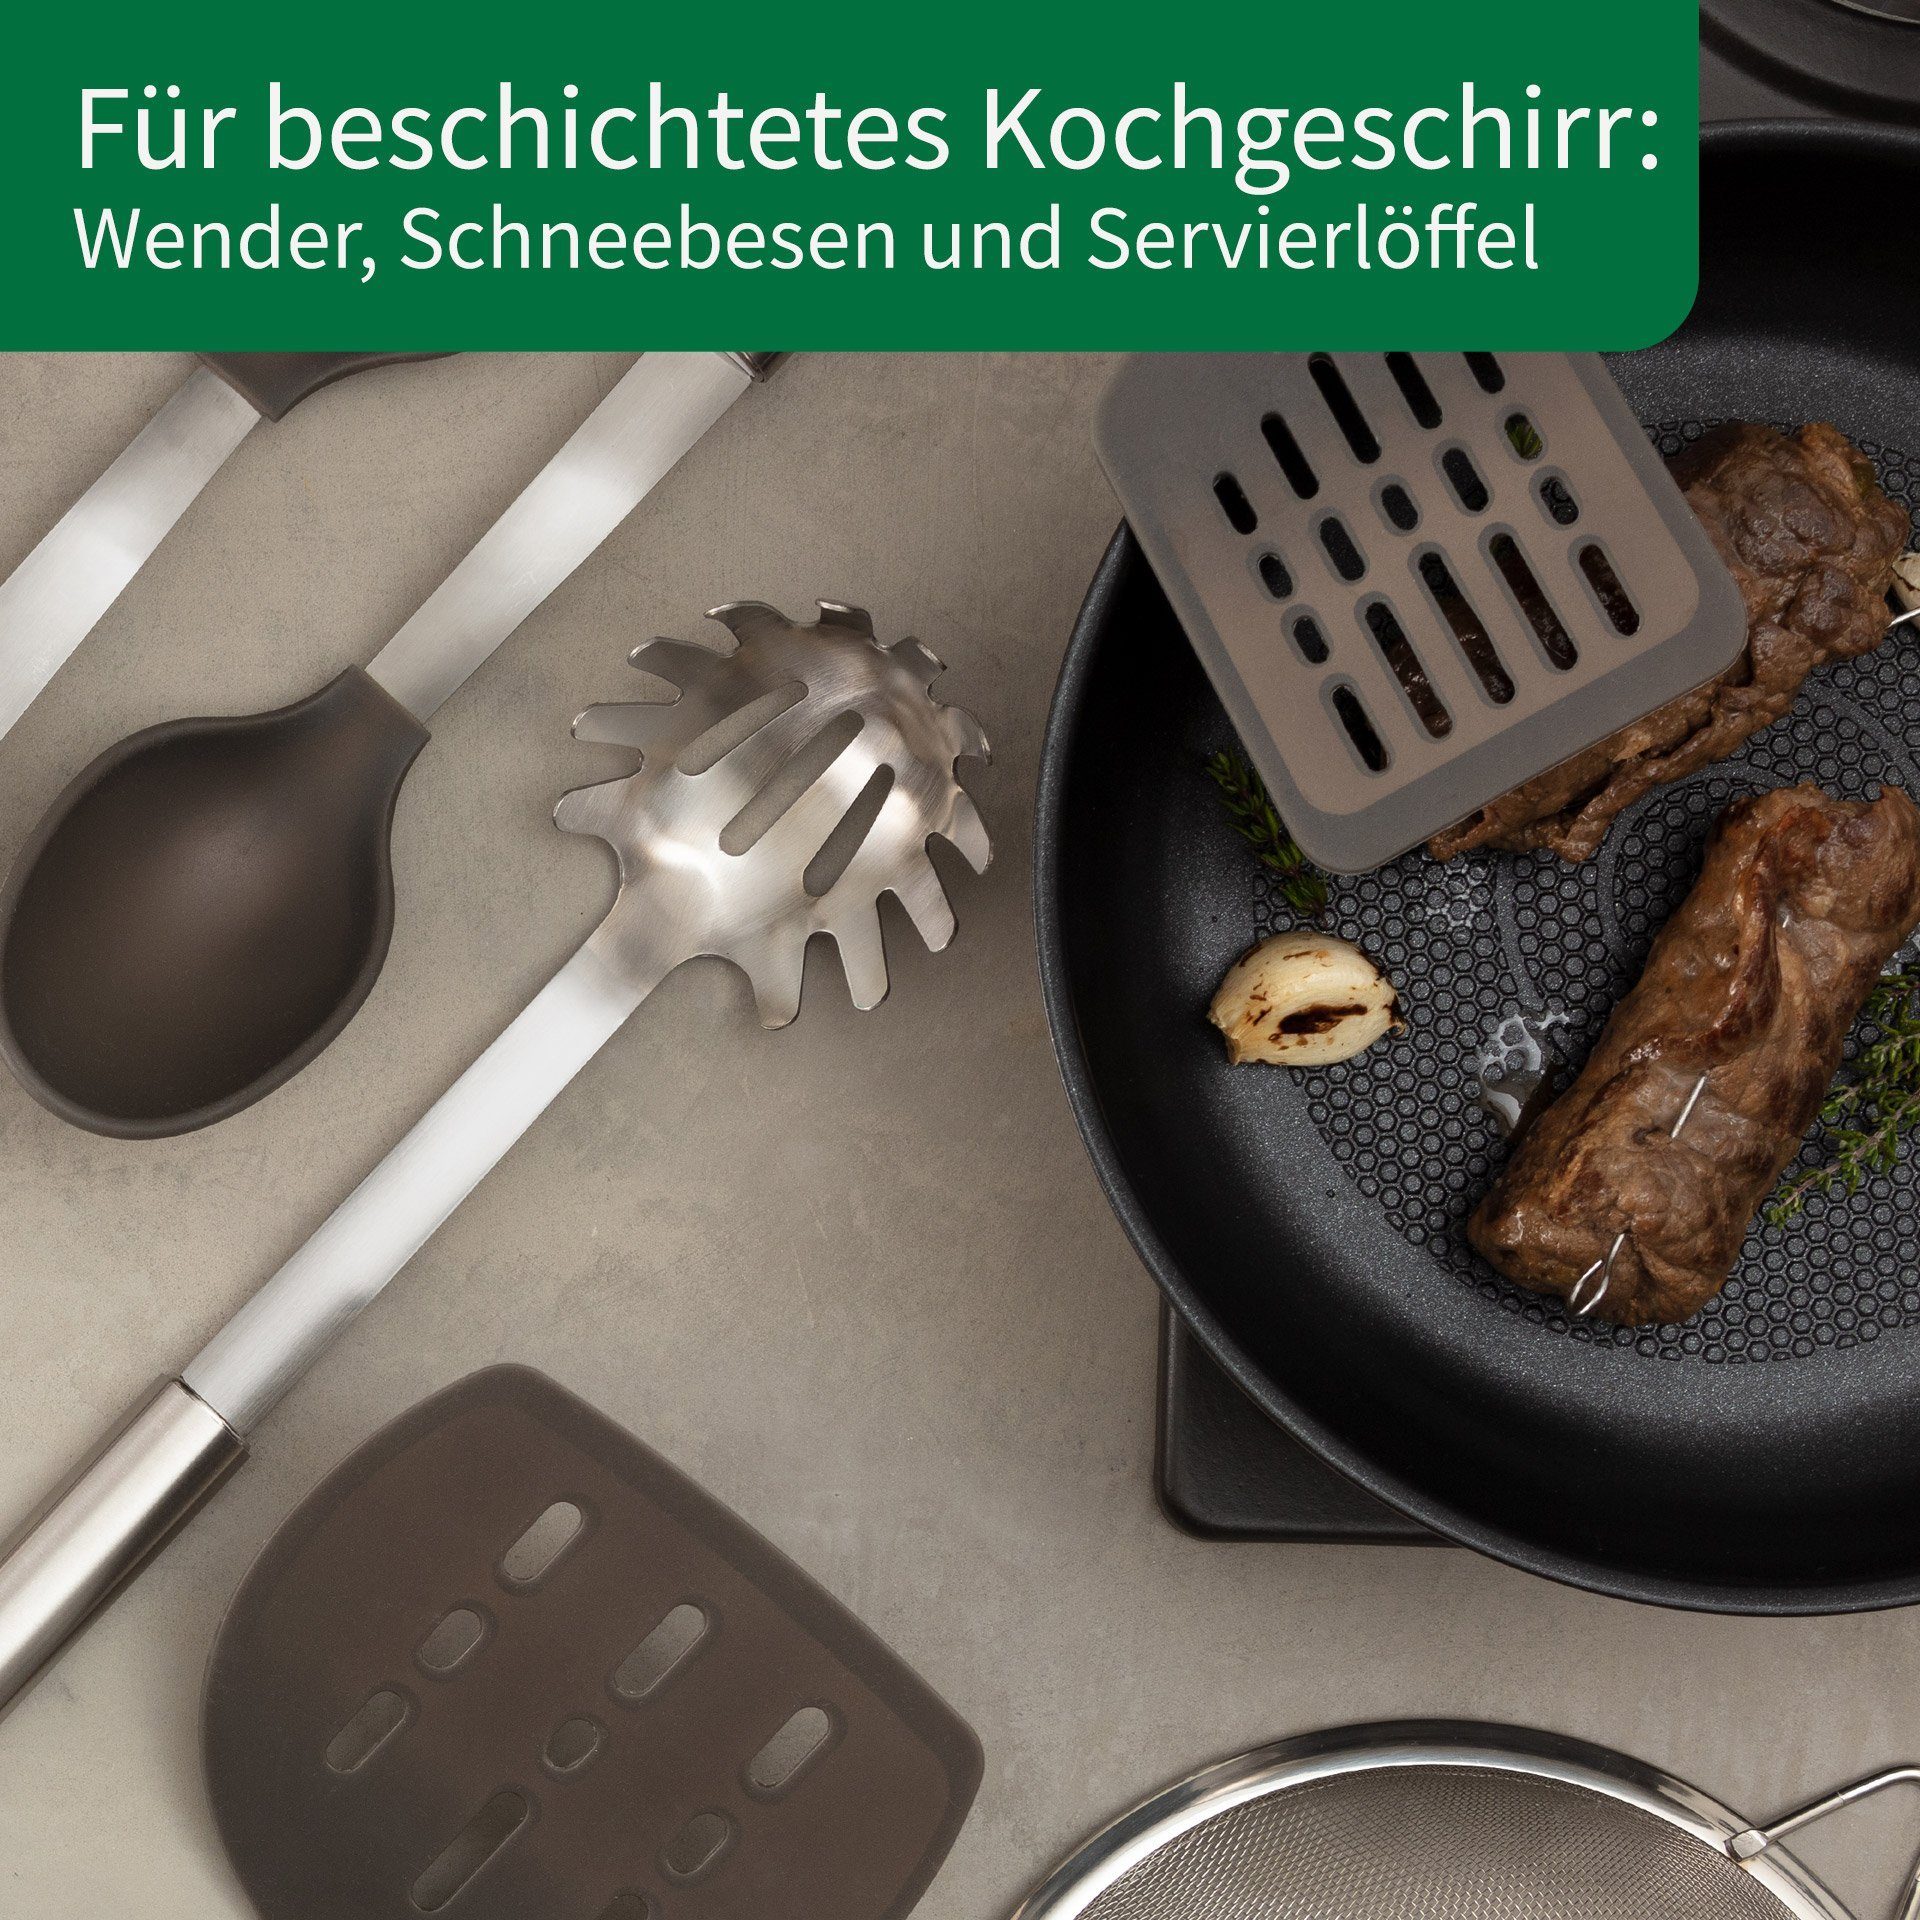 Kochbesteck-Set Fackelmann Chefkoch trifft München